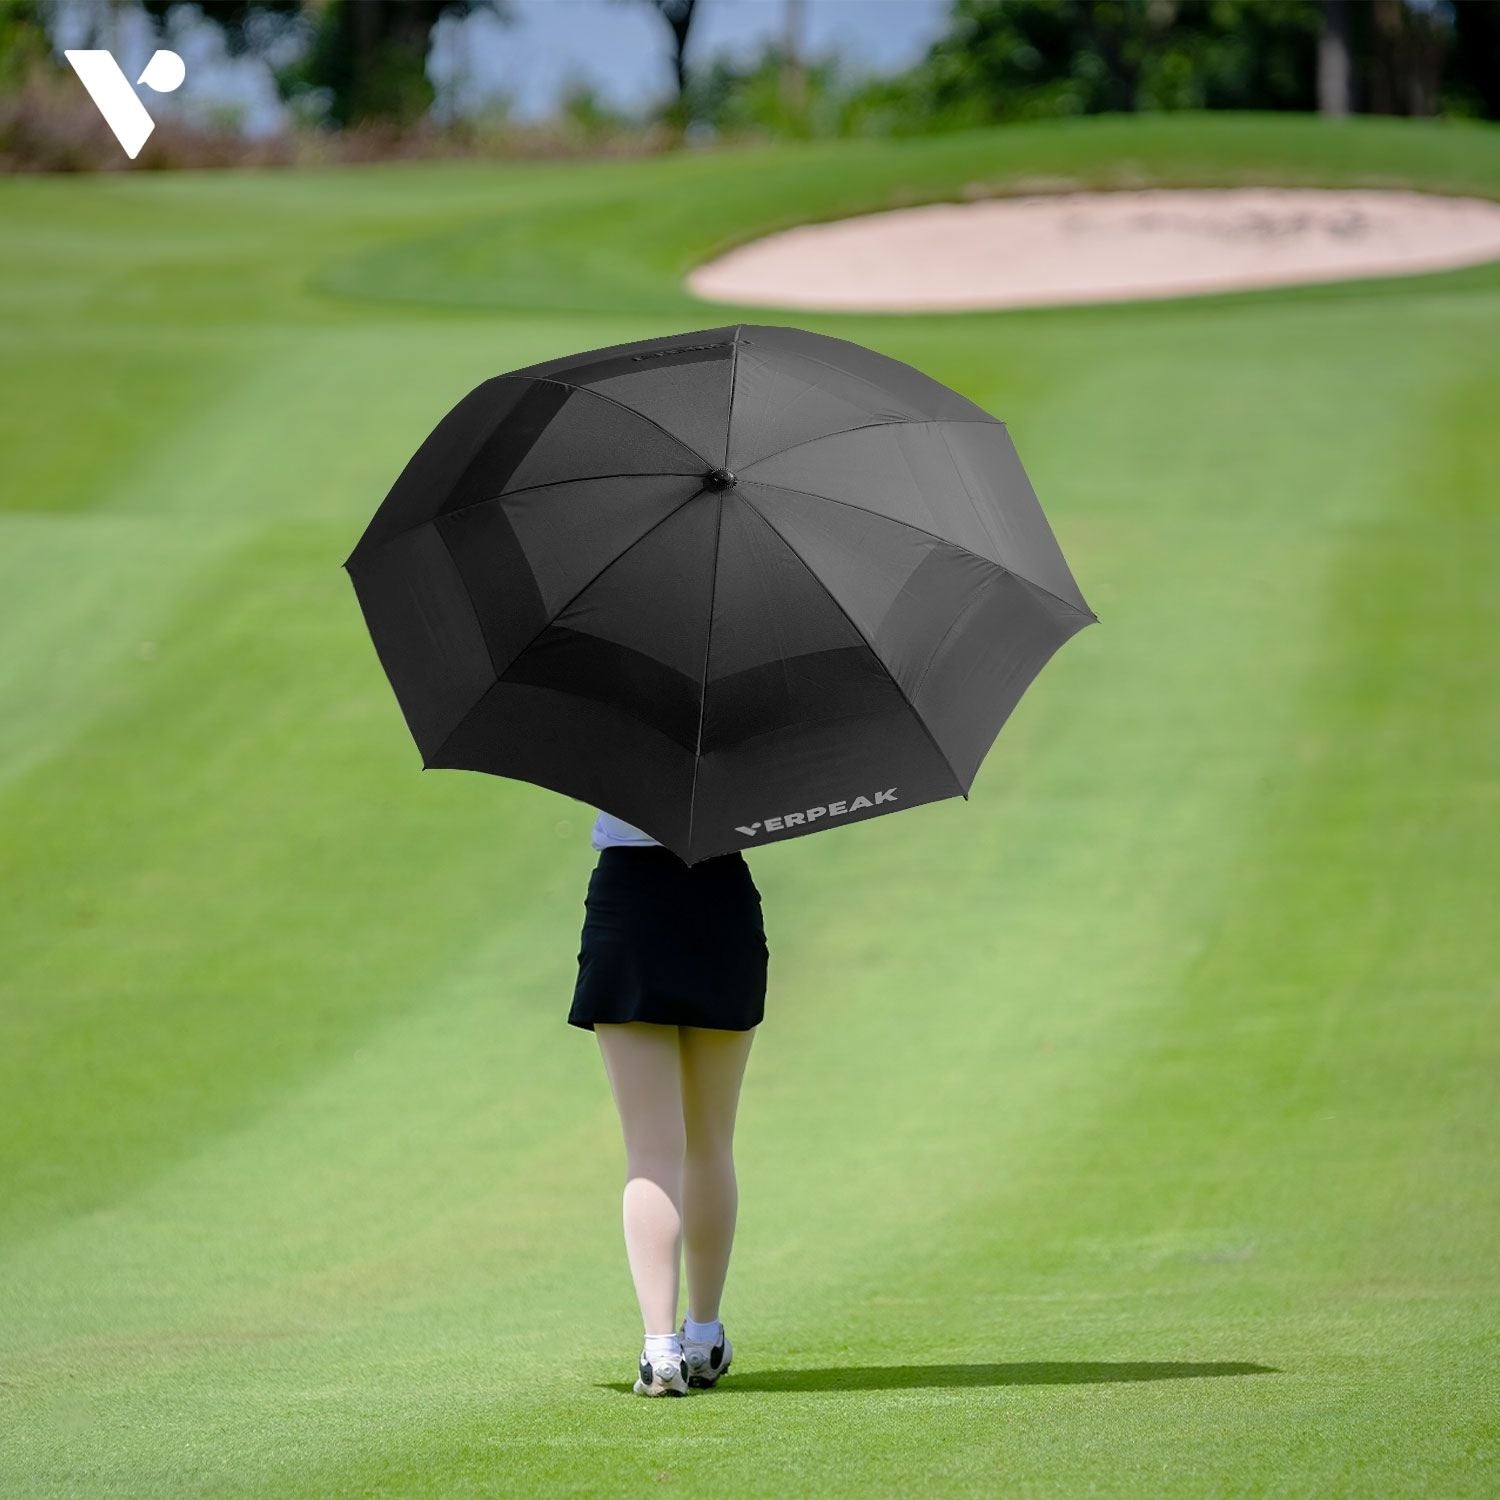 Verpeak Golf Umbrella 62"